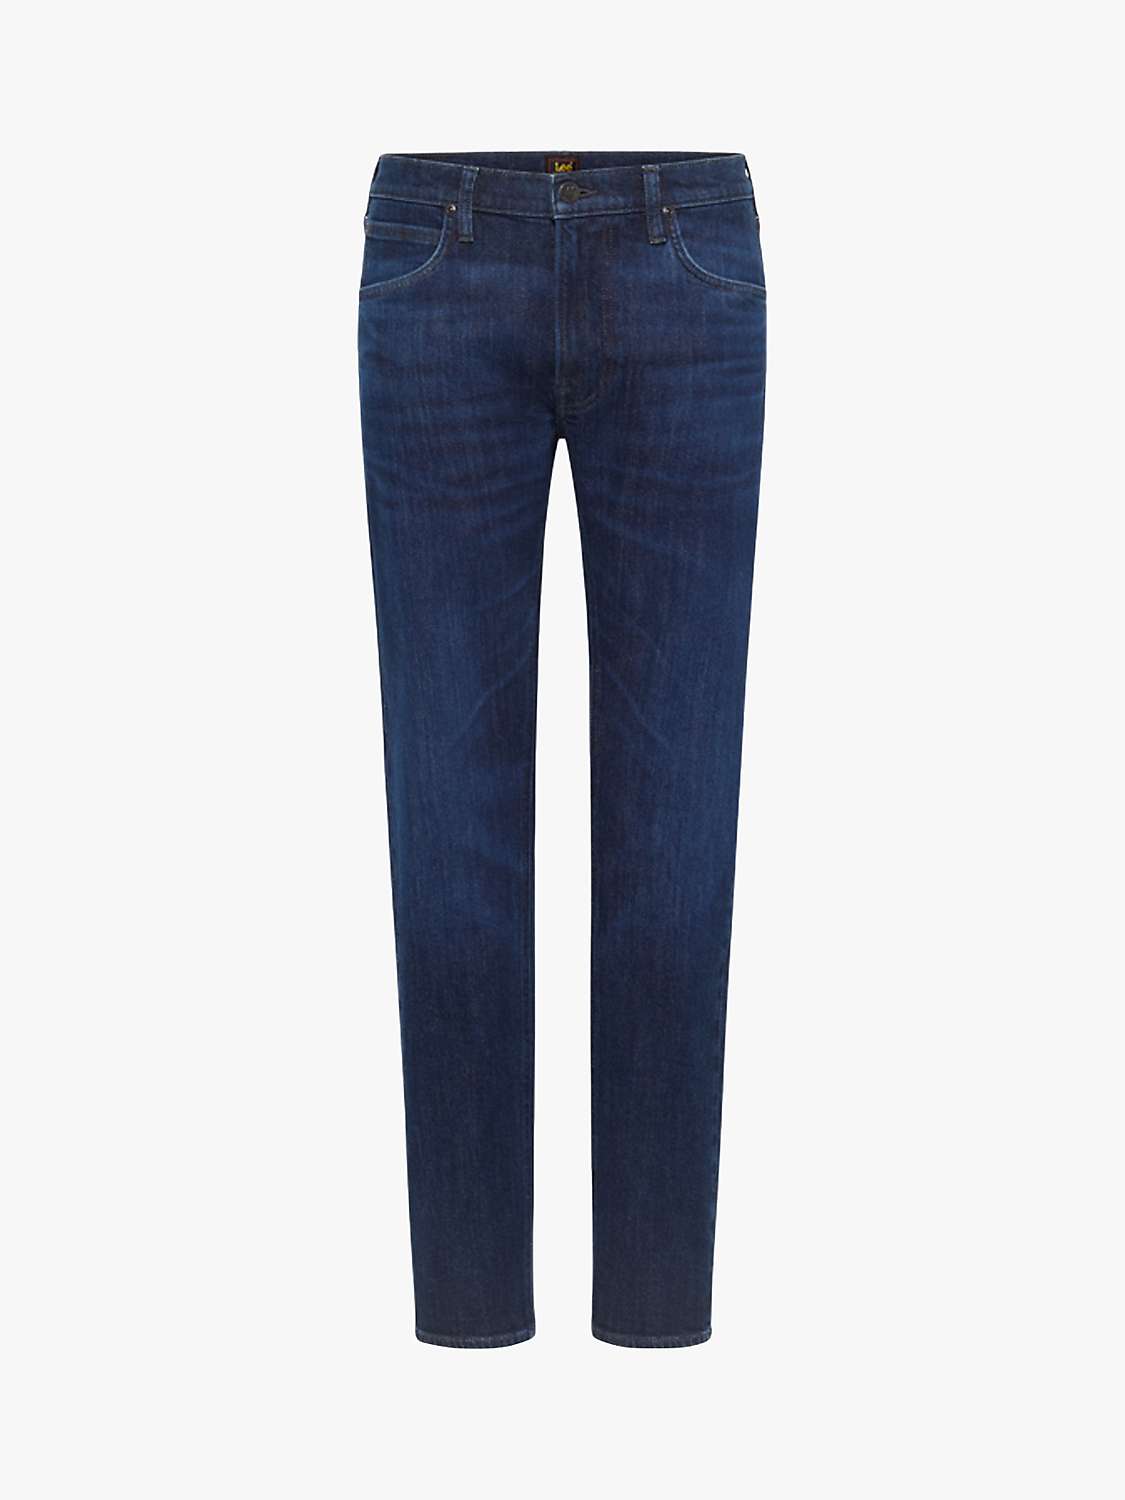 Buy Lee Original Slim Fit Denim Jeans, Blue Online at johnlewis.com